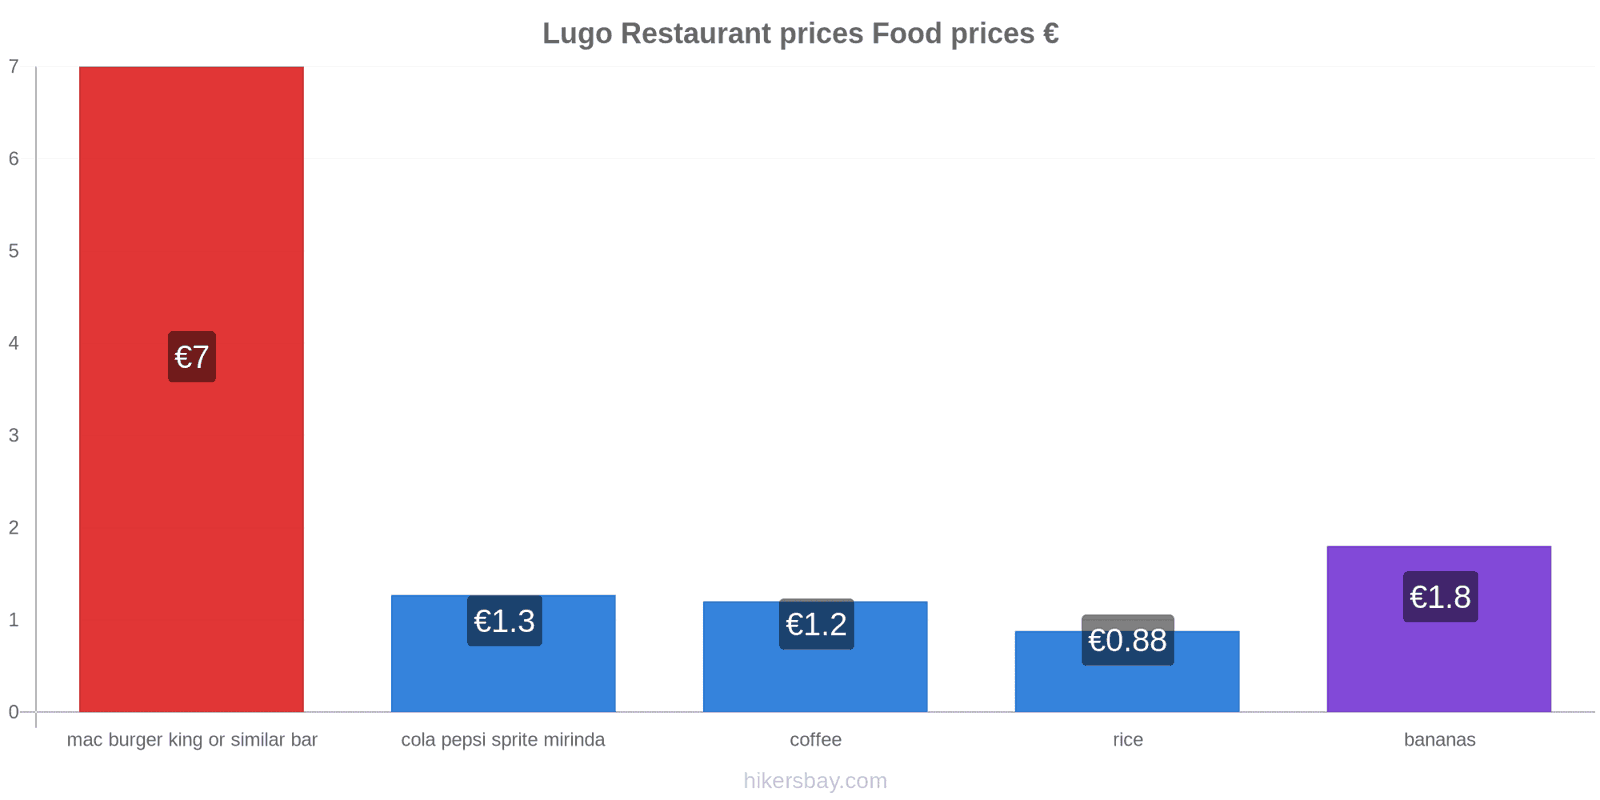 Lugo price changes hikersbay.com